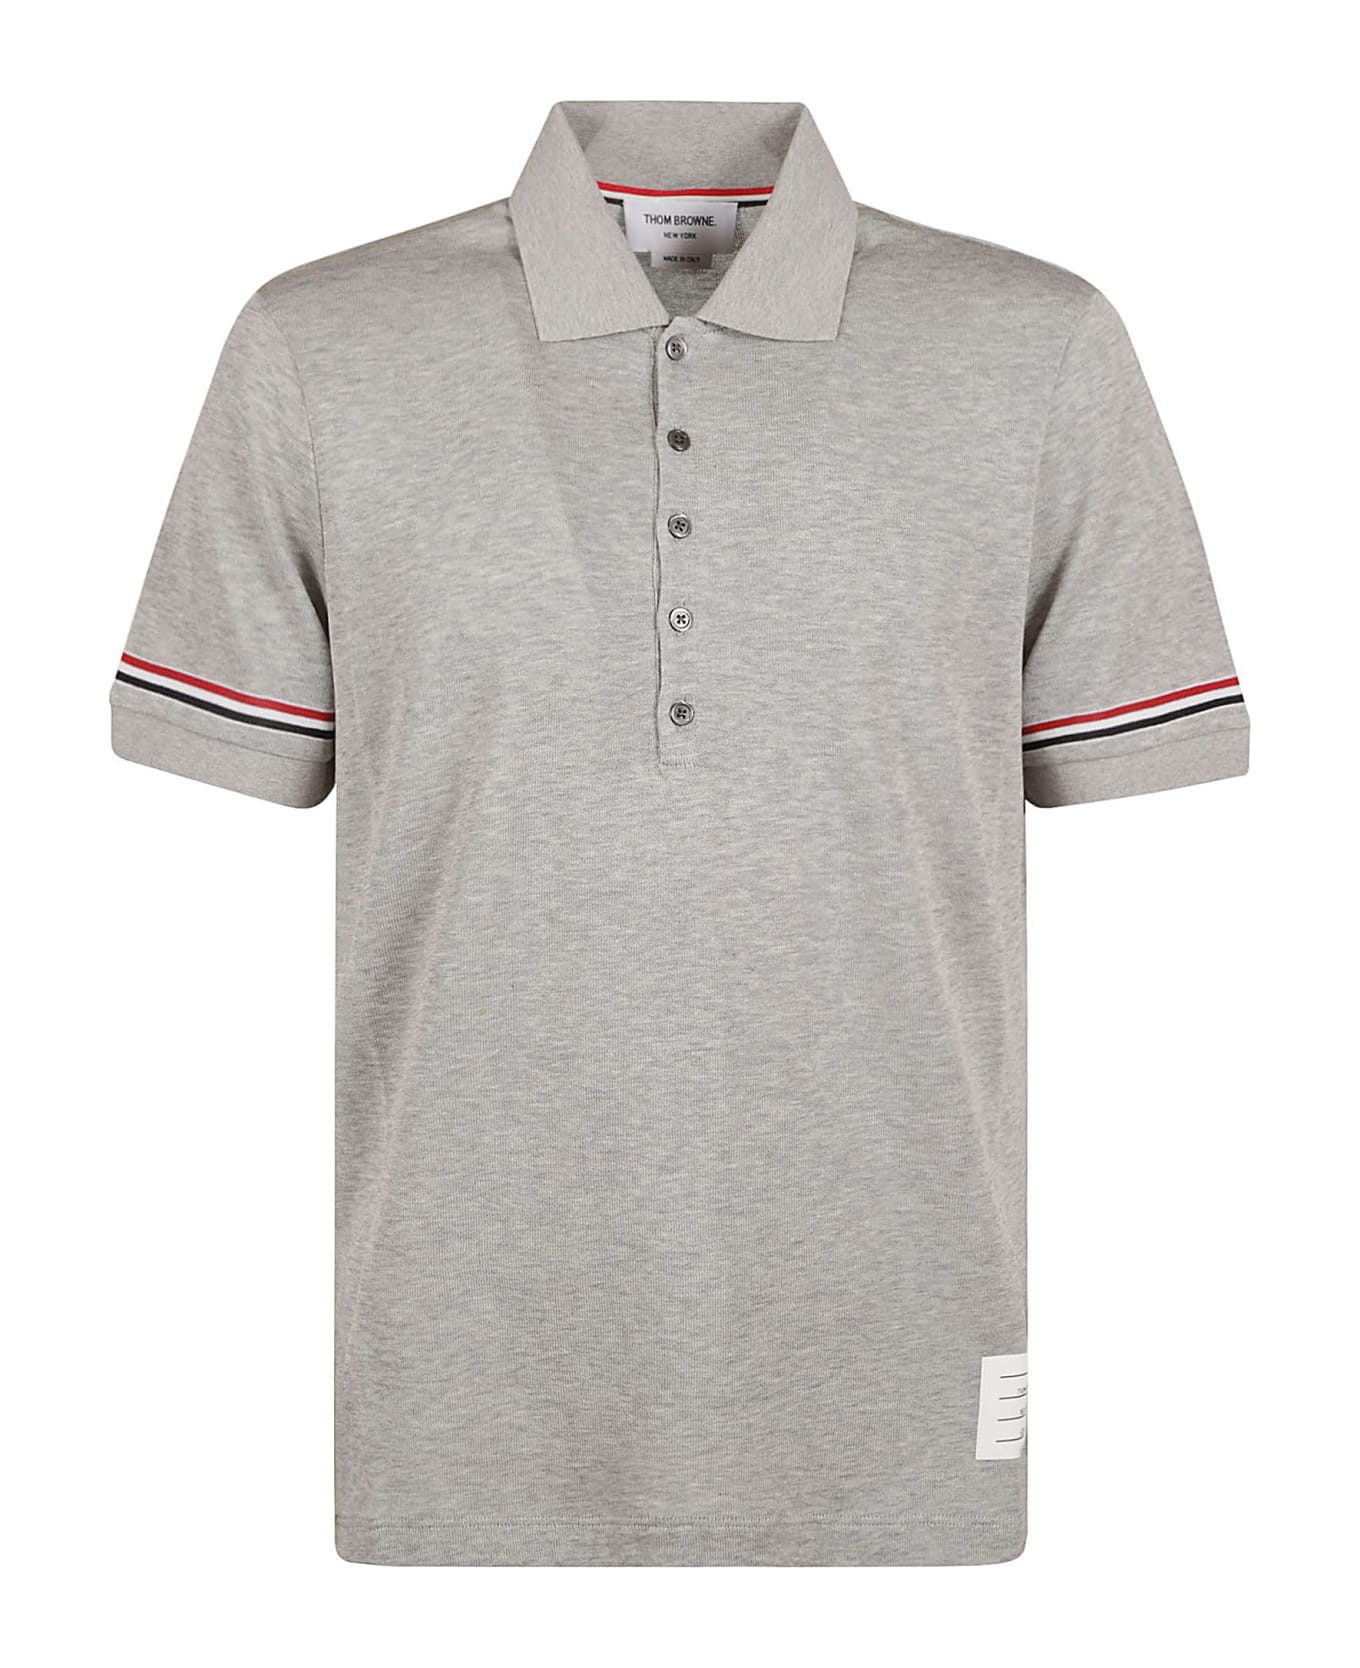 Thom Browne Rwb Polo Shirt - Medium Grey シャツ